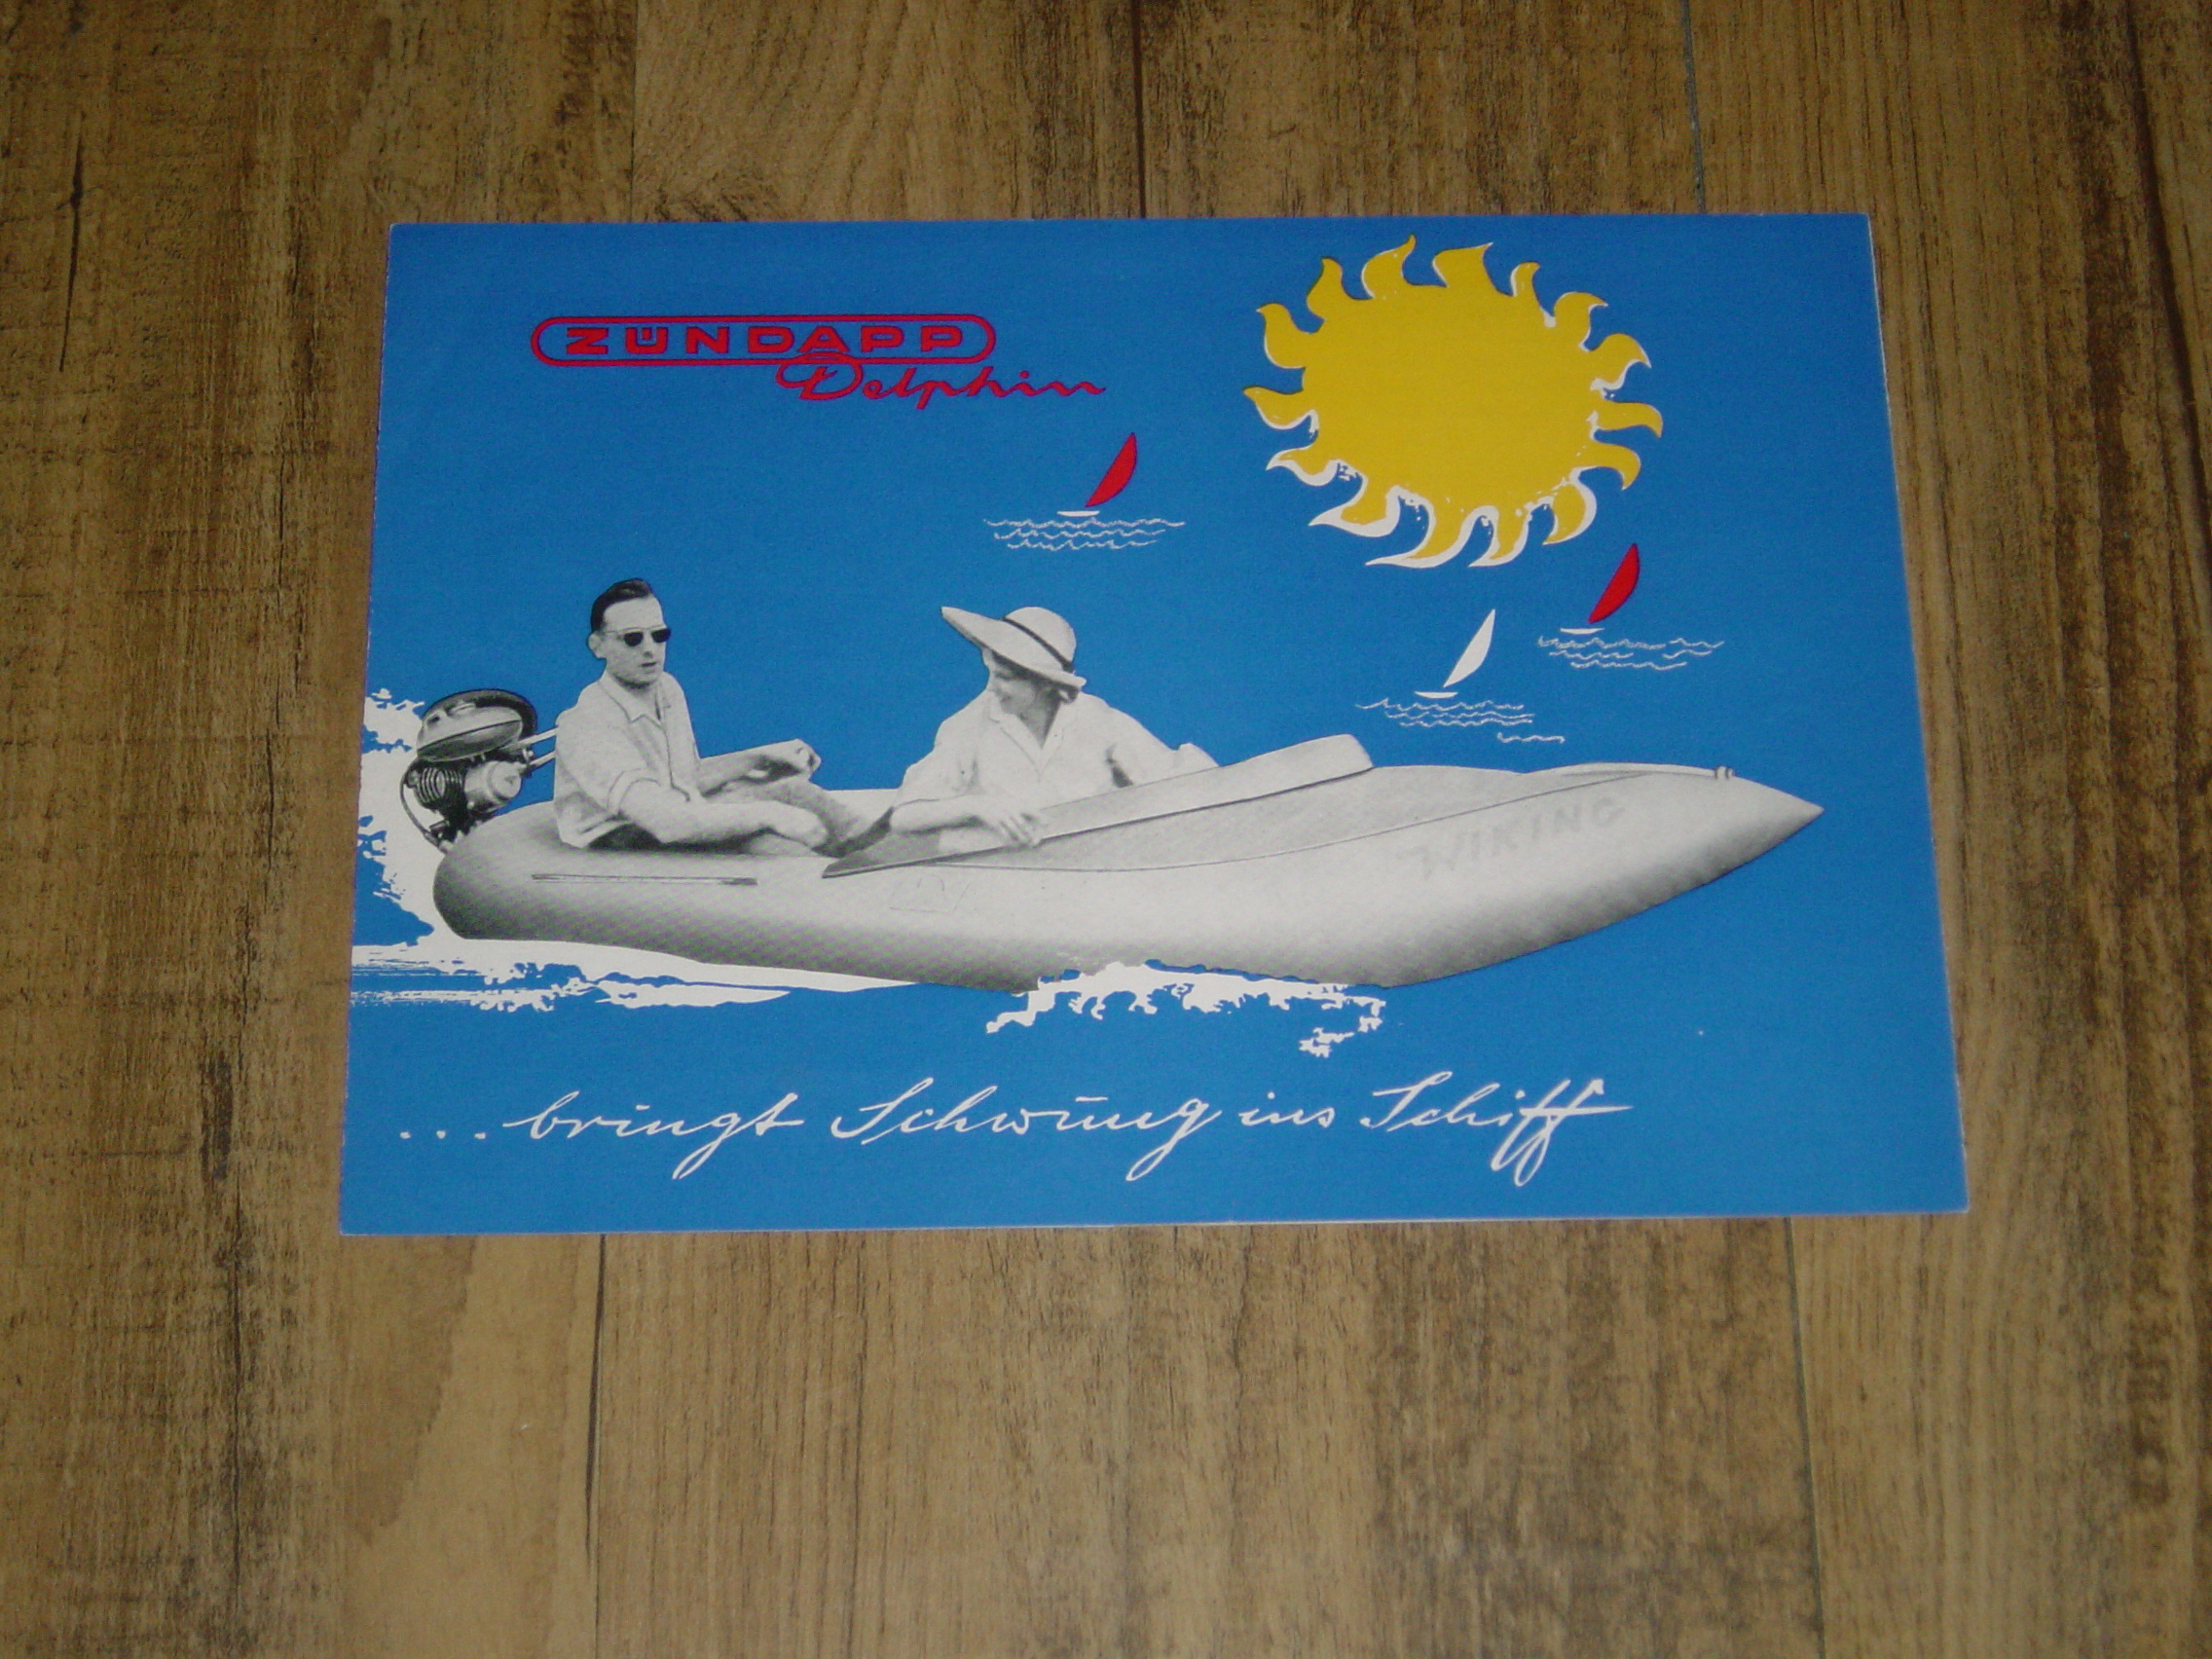 Promotional brochure D - Outboard motor model Delphin Typ 303